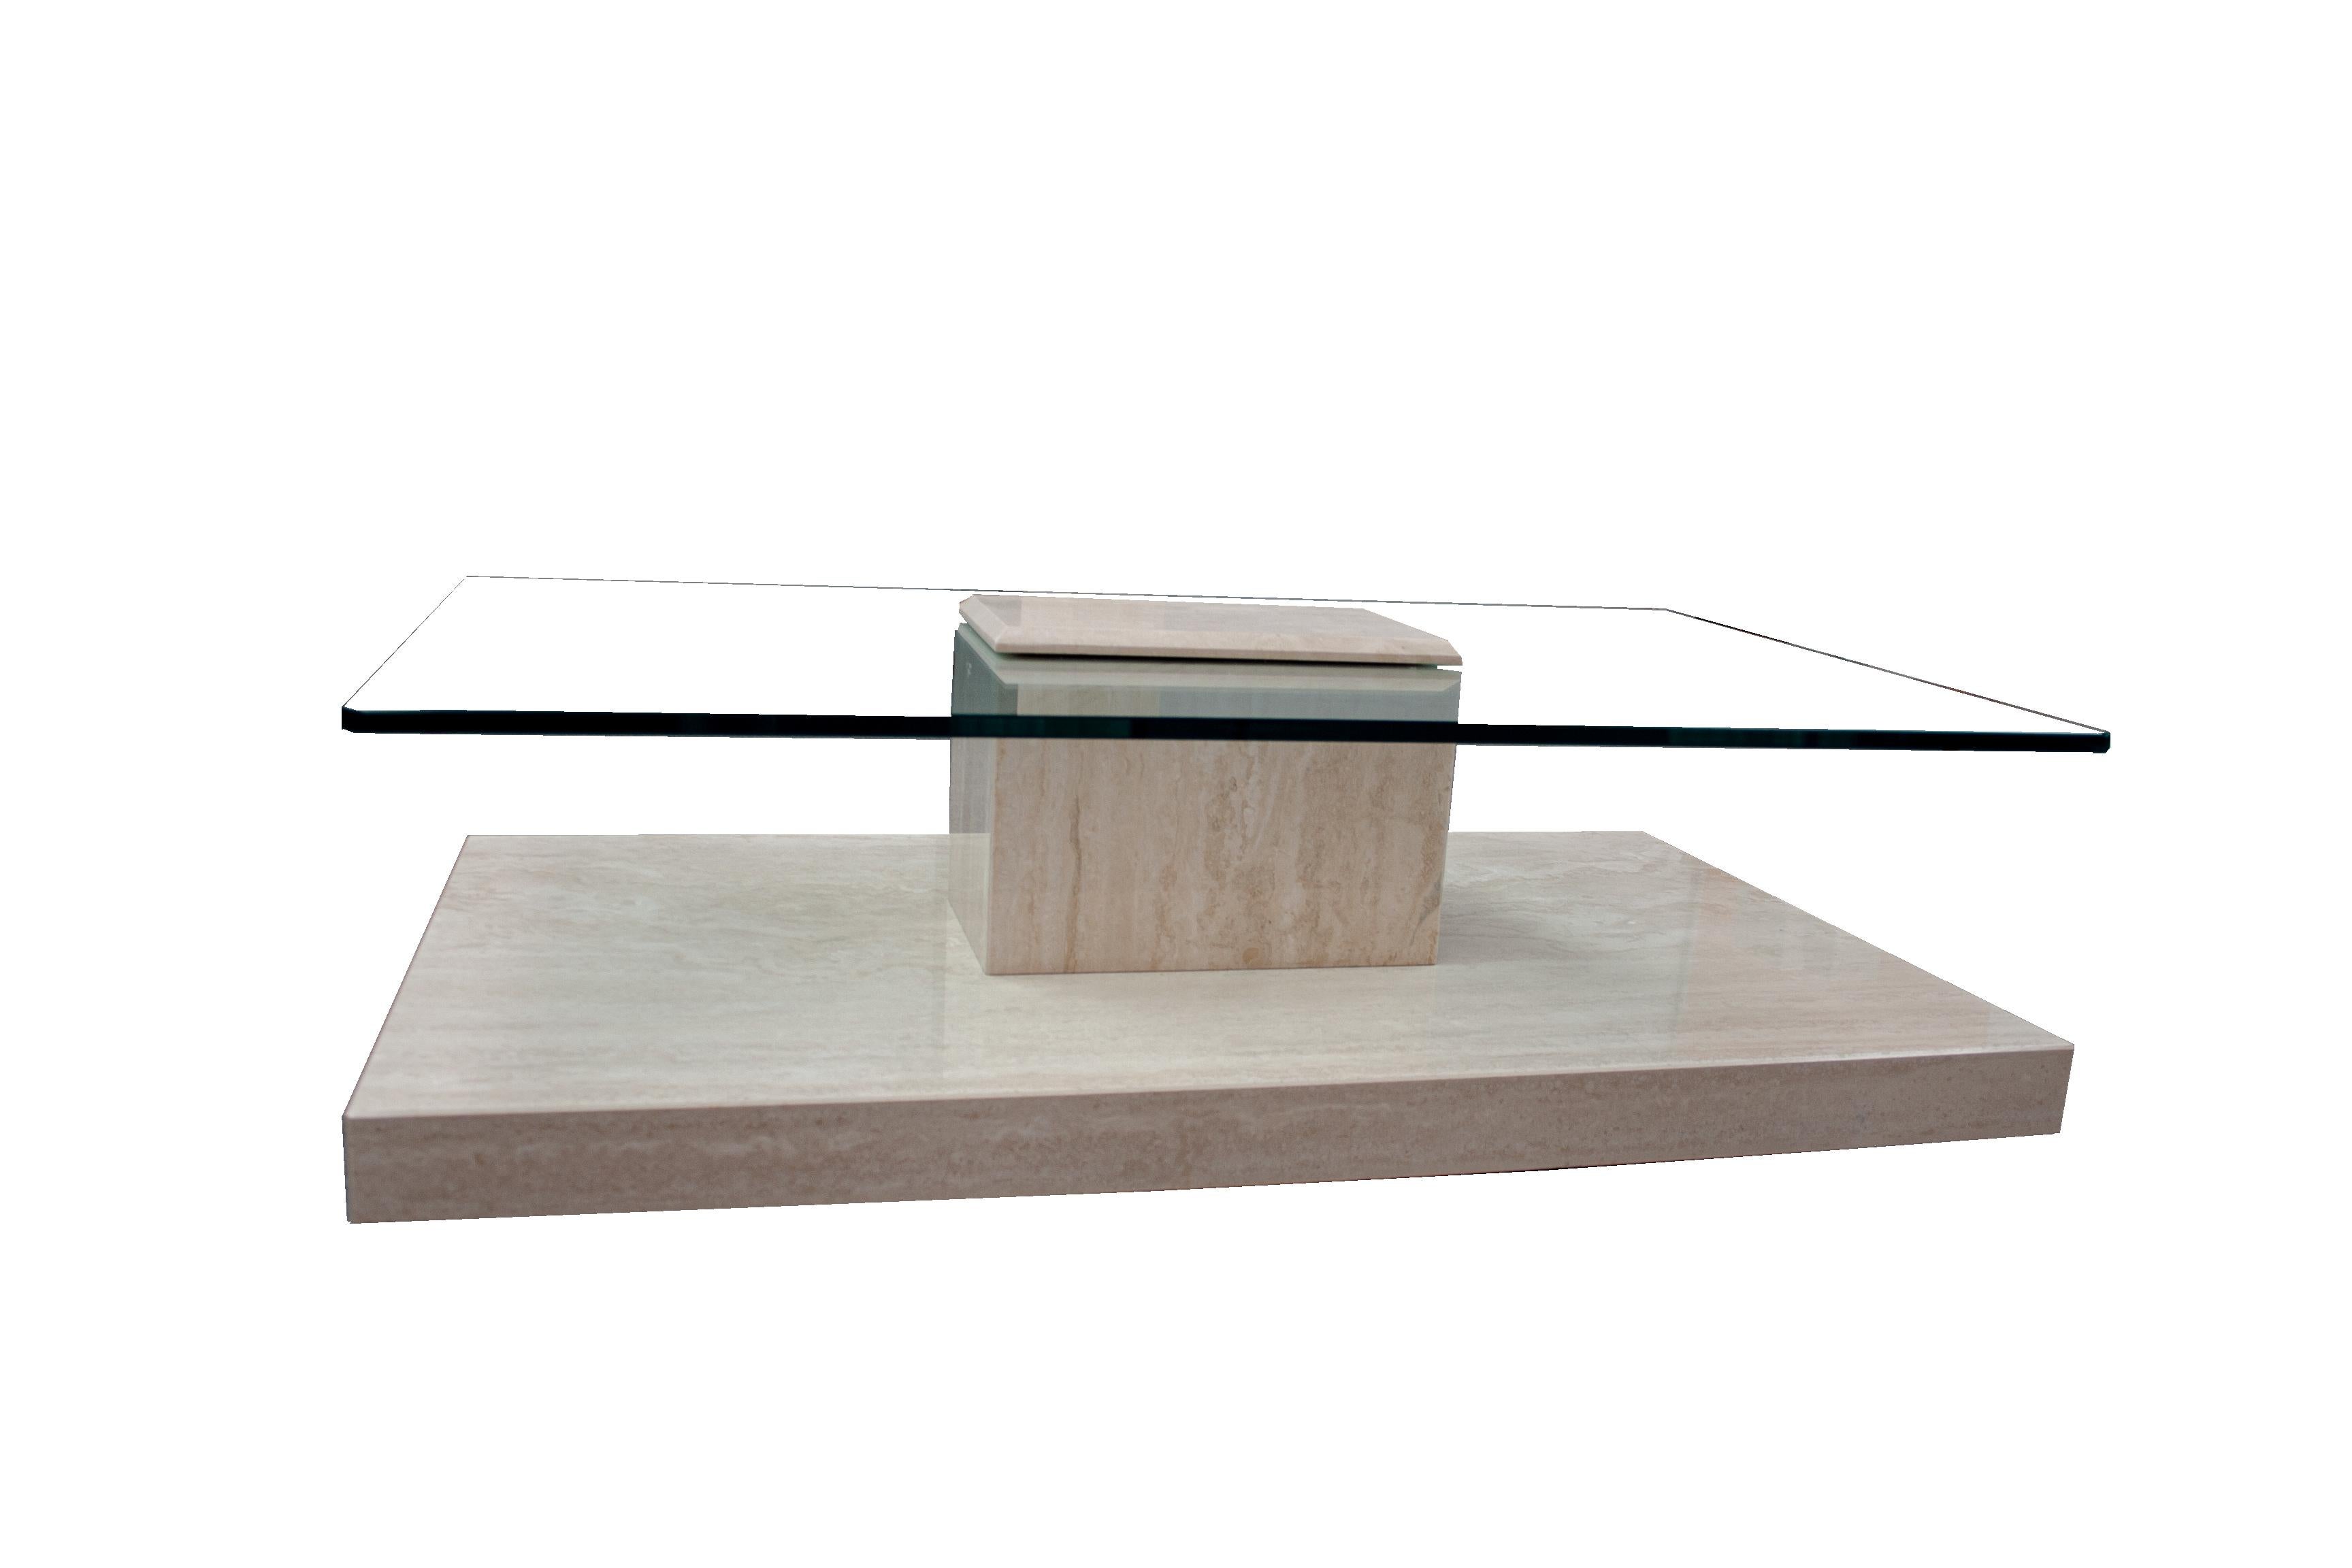 AKRA Mesa de centro de mármol travertino y cristal Diseño contemporáneo España En Stock.
Esta mesa de centro de mármol travertino pulido con cristal tiene un diseño muy particular, ya que una parte del mármol cubre el cristal de la superficie y lo